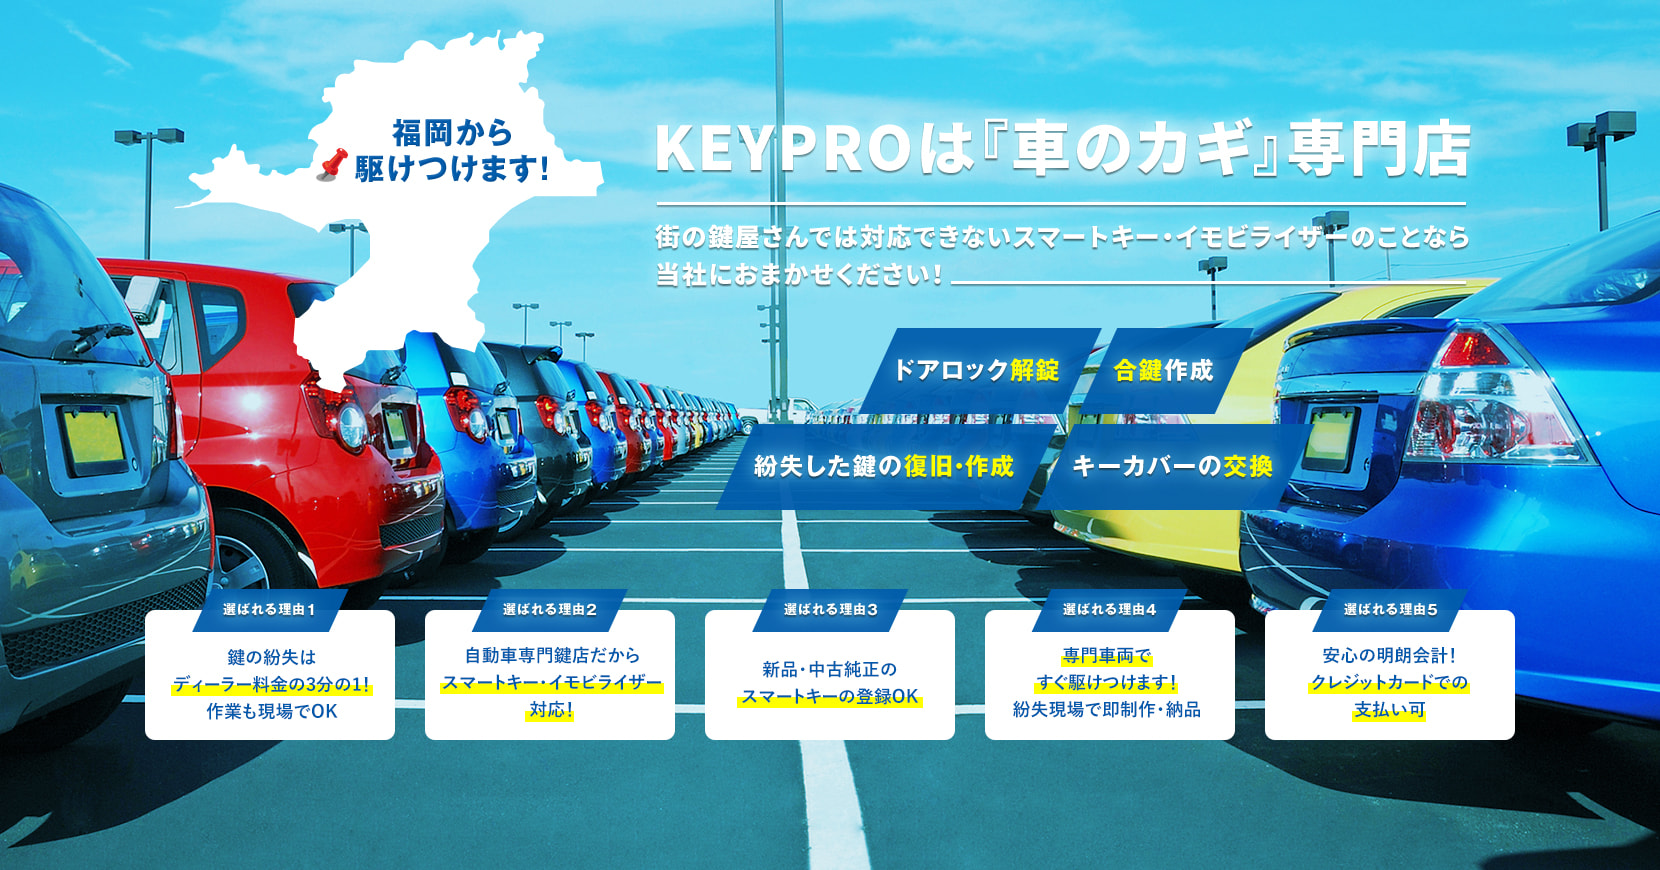 福岡で車の合鍵スペアキー作成 カギ紛失解錠の出張鍵屋はkeypro